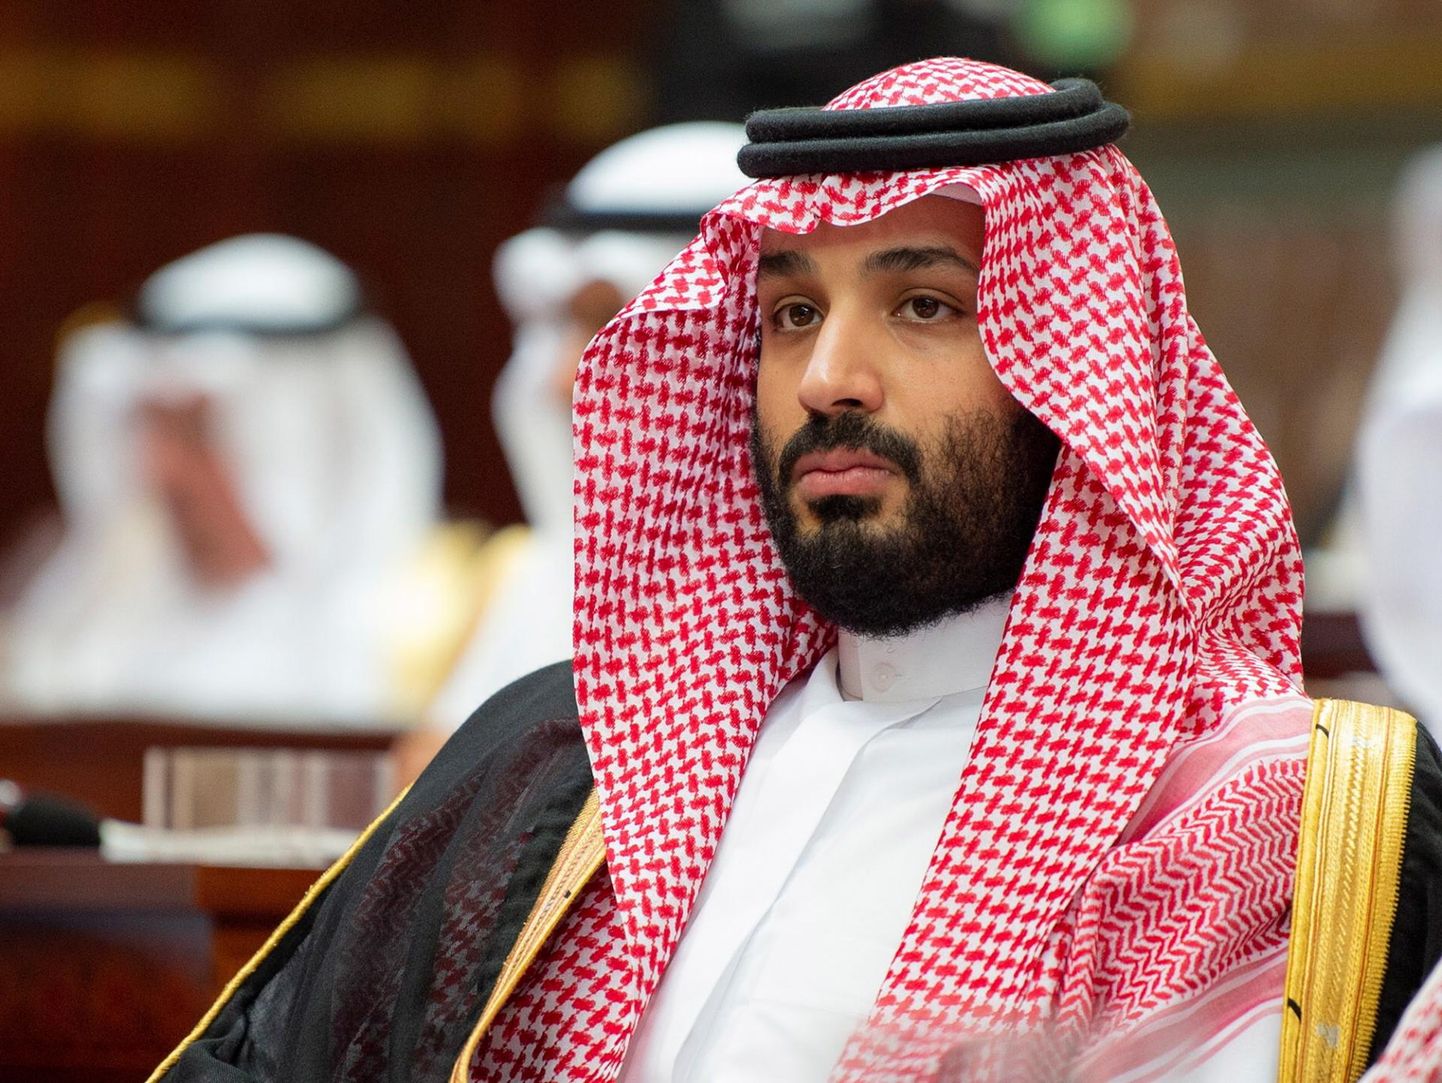 Ameerika Ühendriikide Luure Keskagentuuri (CIA) hinnangul tellis ajakirjanik Jamal Khashoggi mõrva Saudi Araabia kroonprints Mohammad bin Salman.